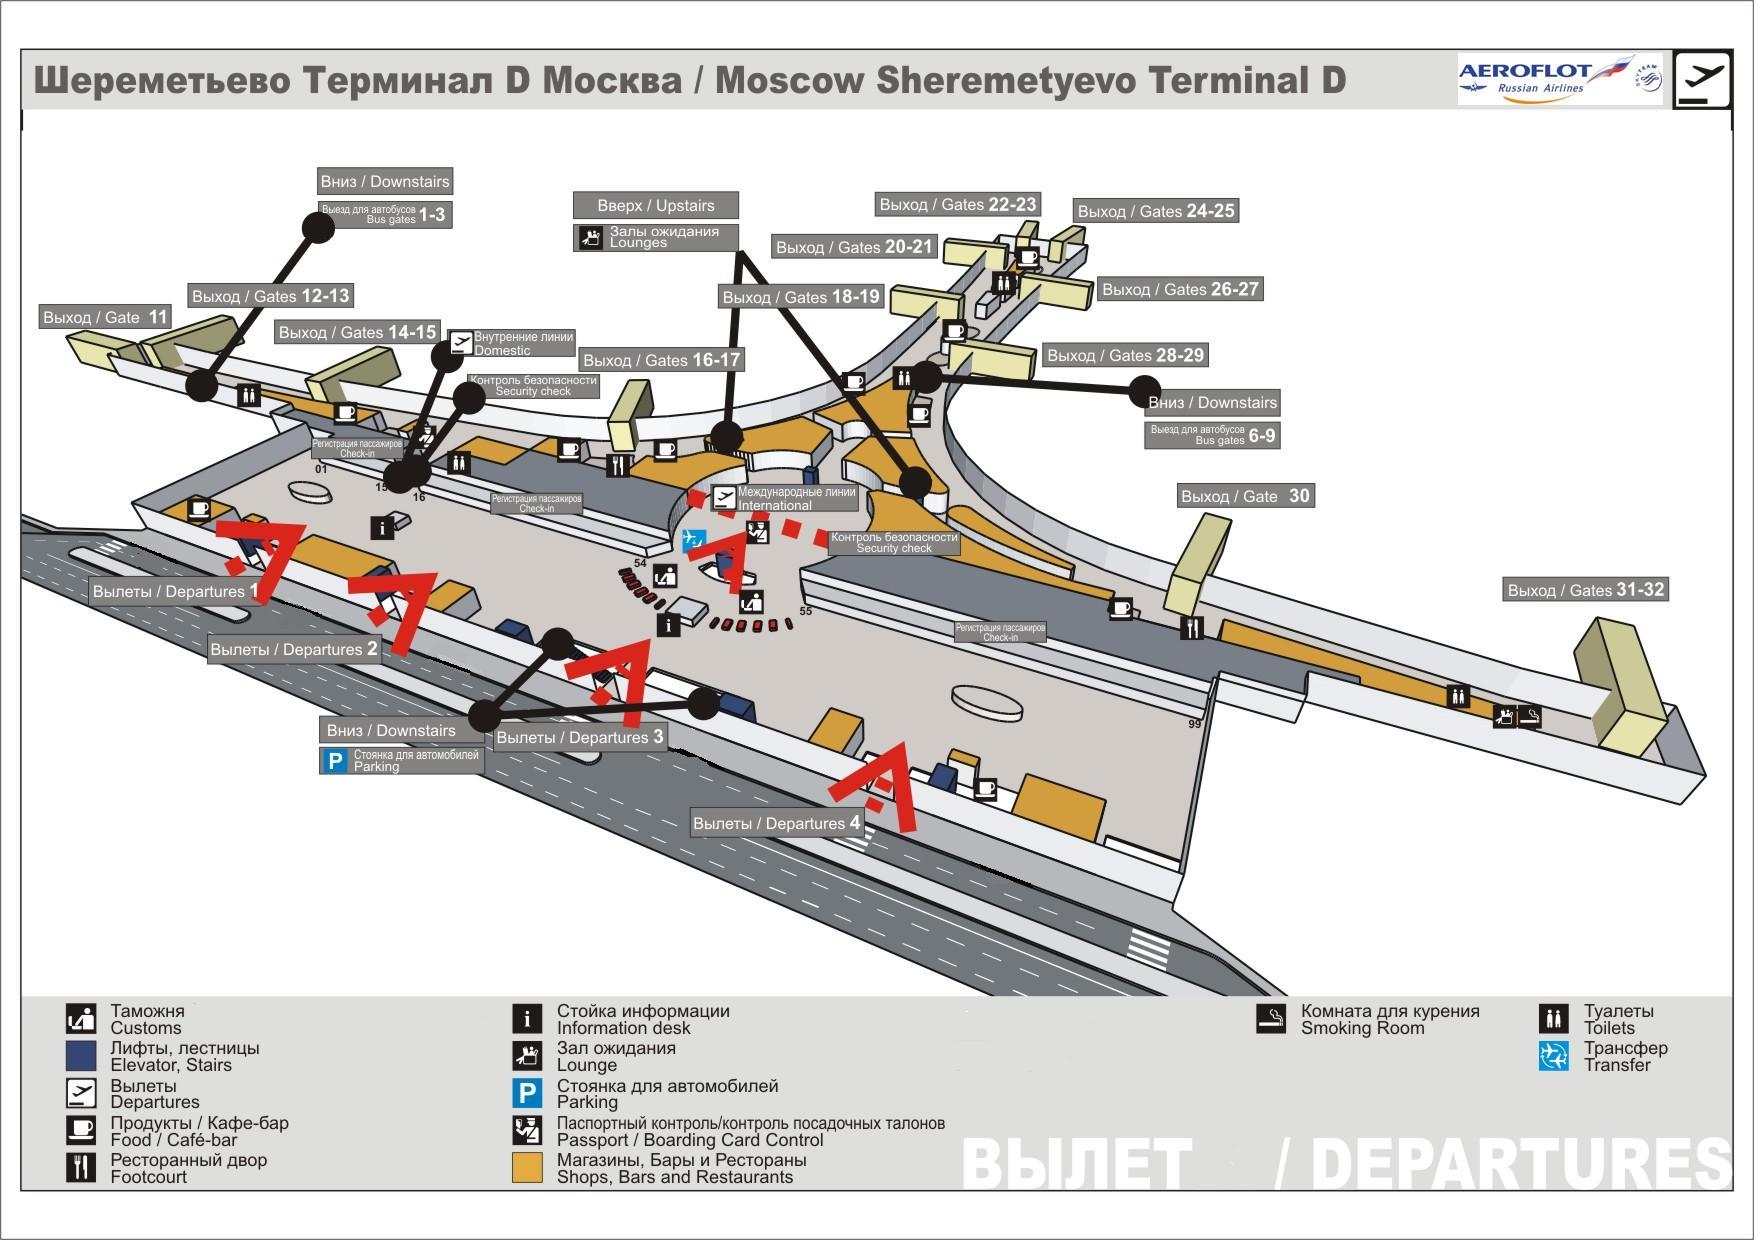 Аэропорт Шереметьево - общая схема парковок